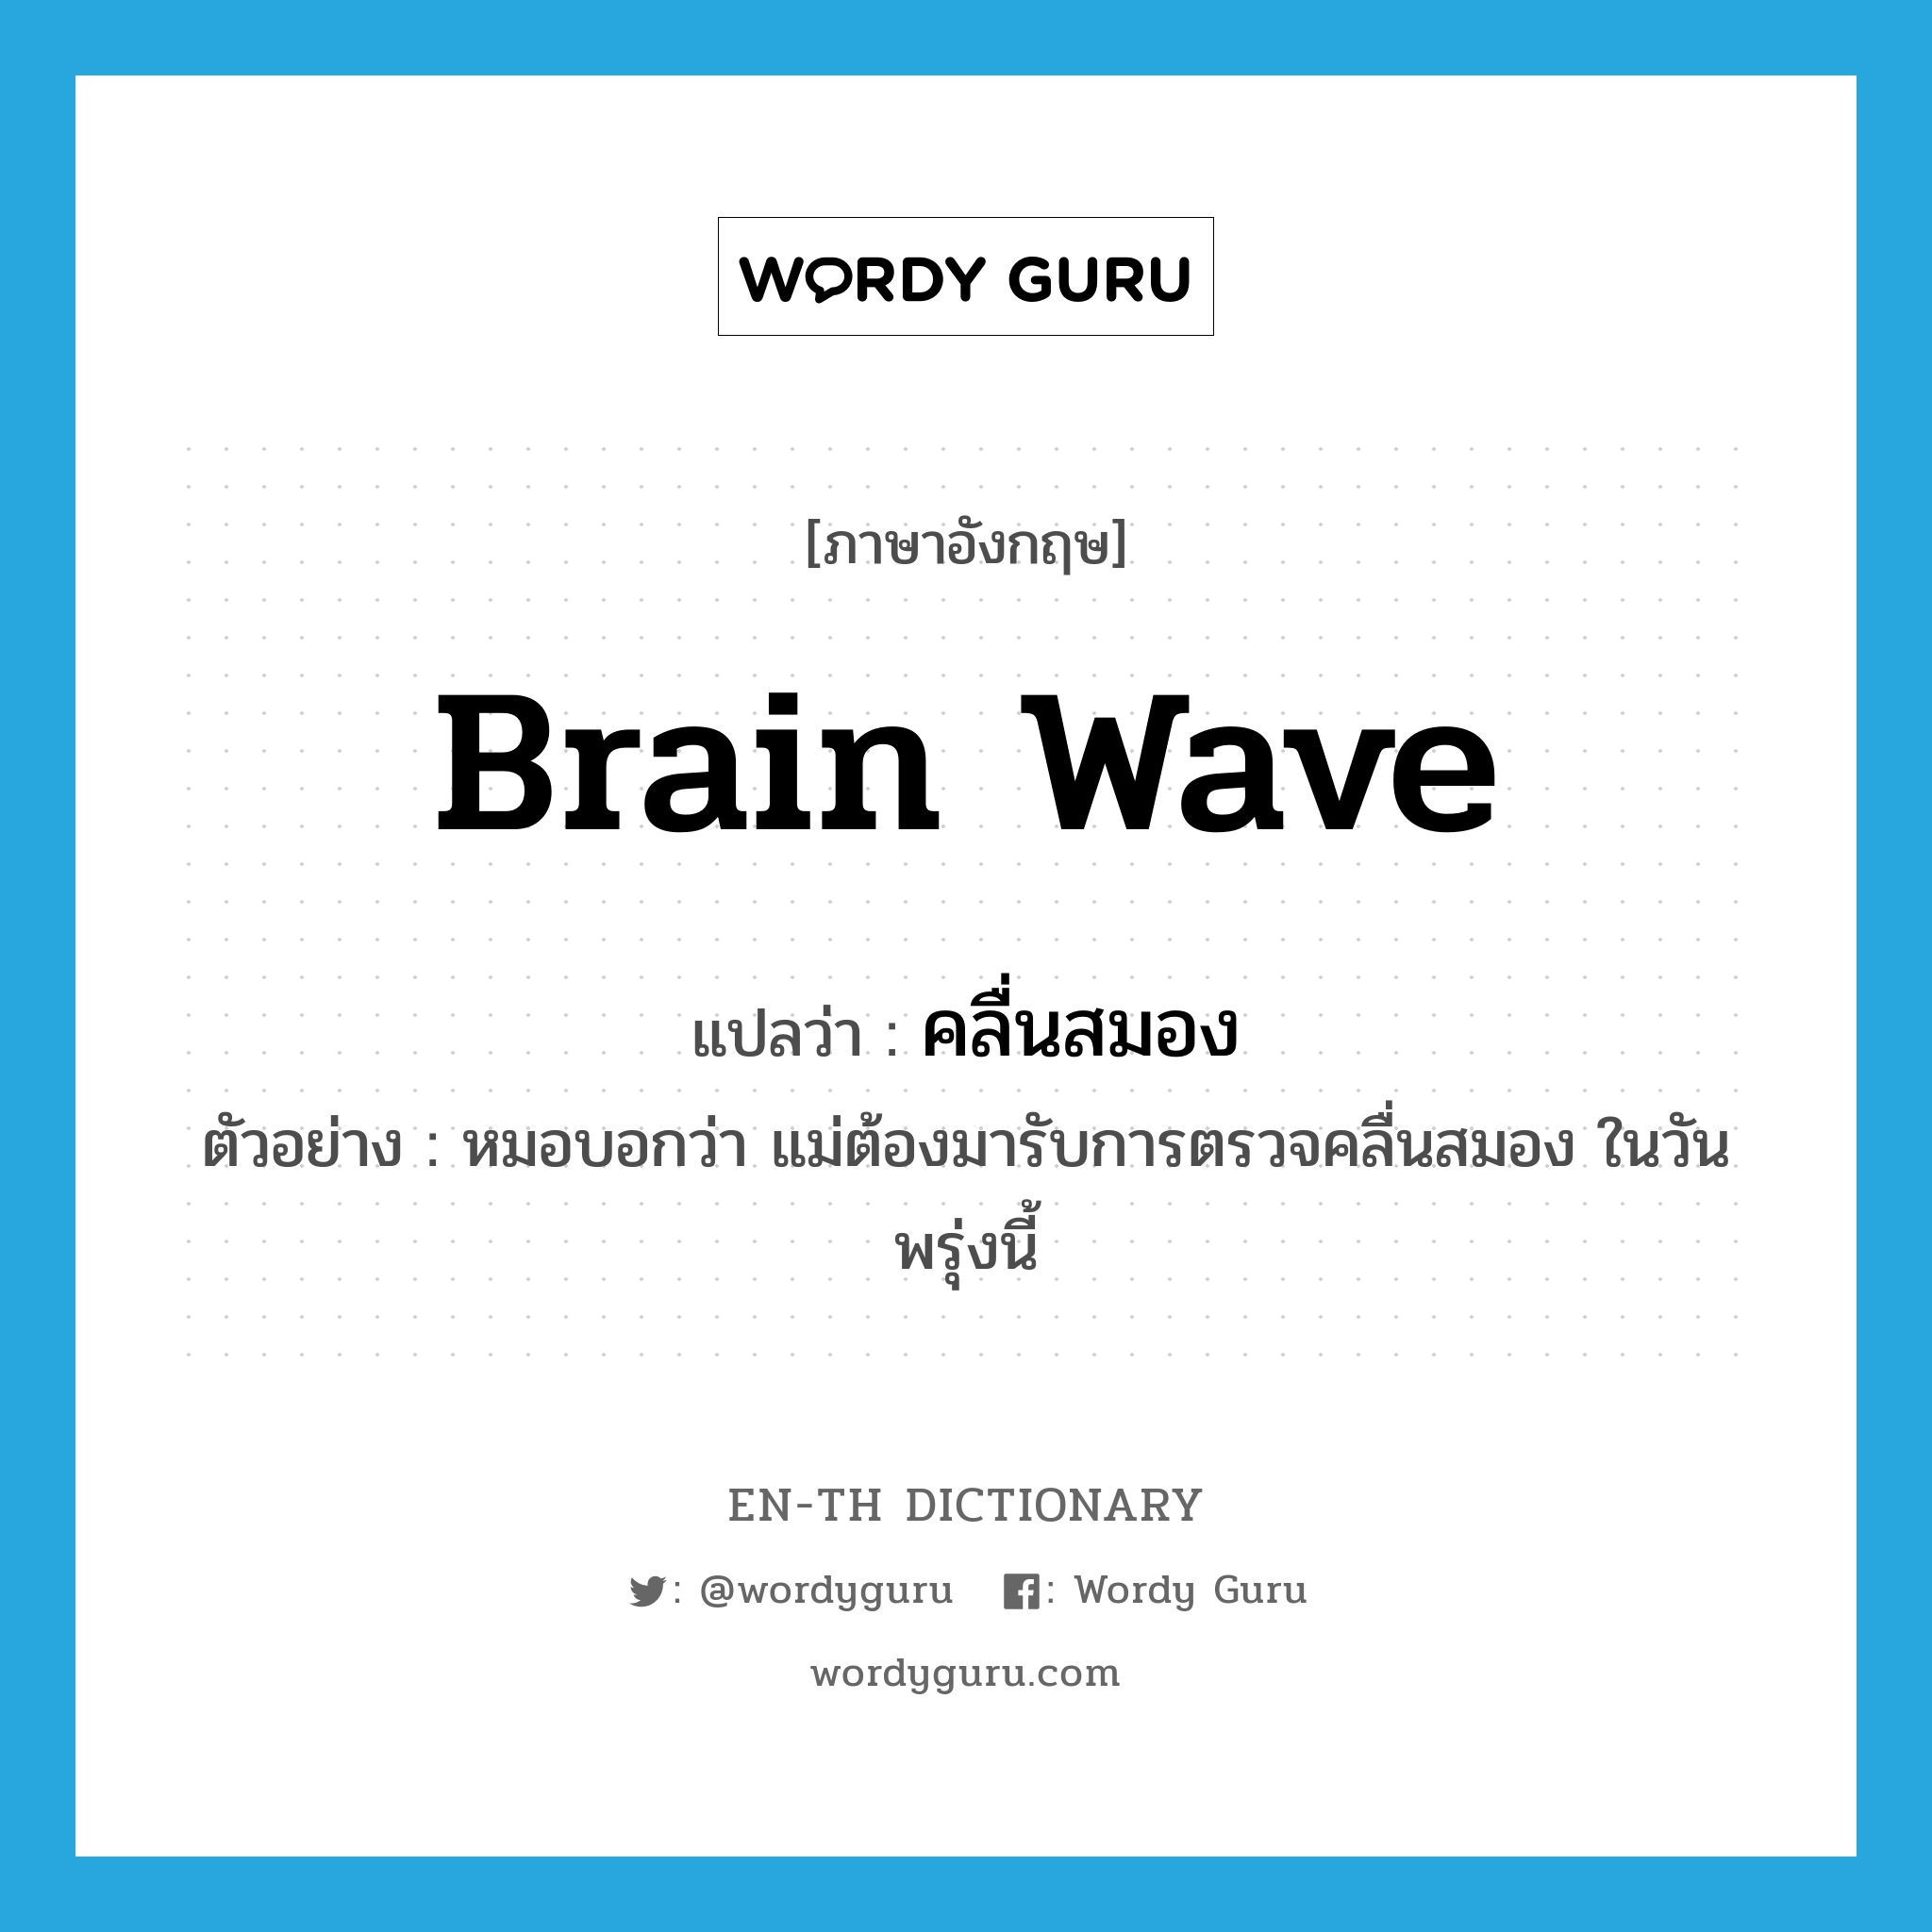 คลื่นสมอง ภาษาอังกฤษ?, คำศัพท์ภาษาอังกฤษ คลื่นสมอง แปลว่า brain wave ประเภท N ตัวอย่าง หมอบอกว่า แม่ต้องมารับการตรวจคลื่นสมอง ในวันพรุ่งนี้ หมวด N